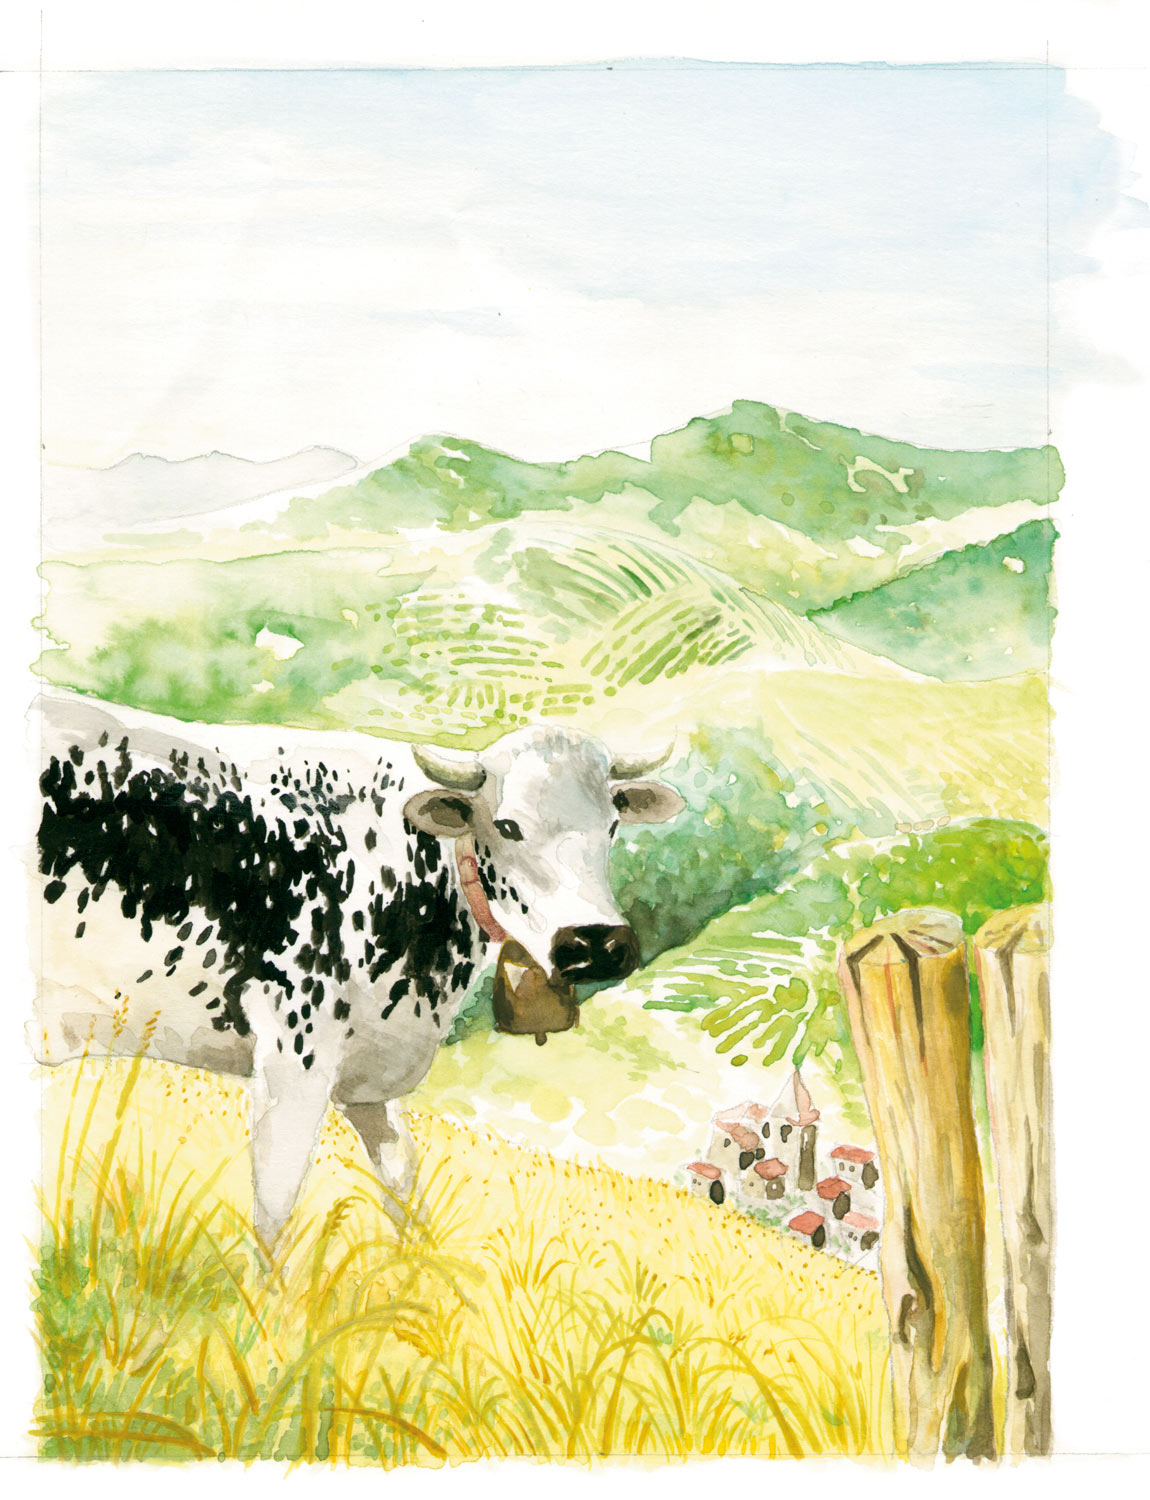 Aquarell einer Kuh mit Hügellandschaft im Hintergrund.